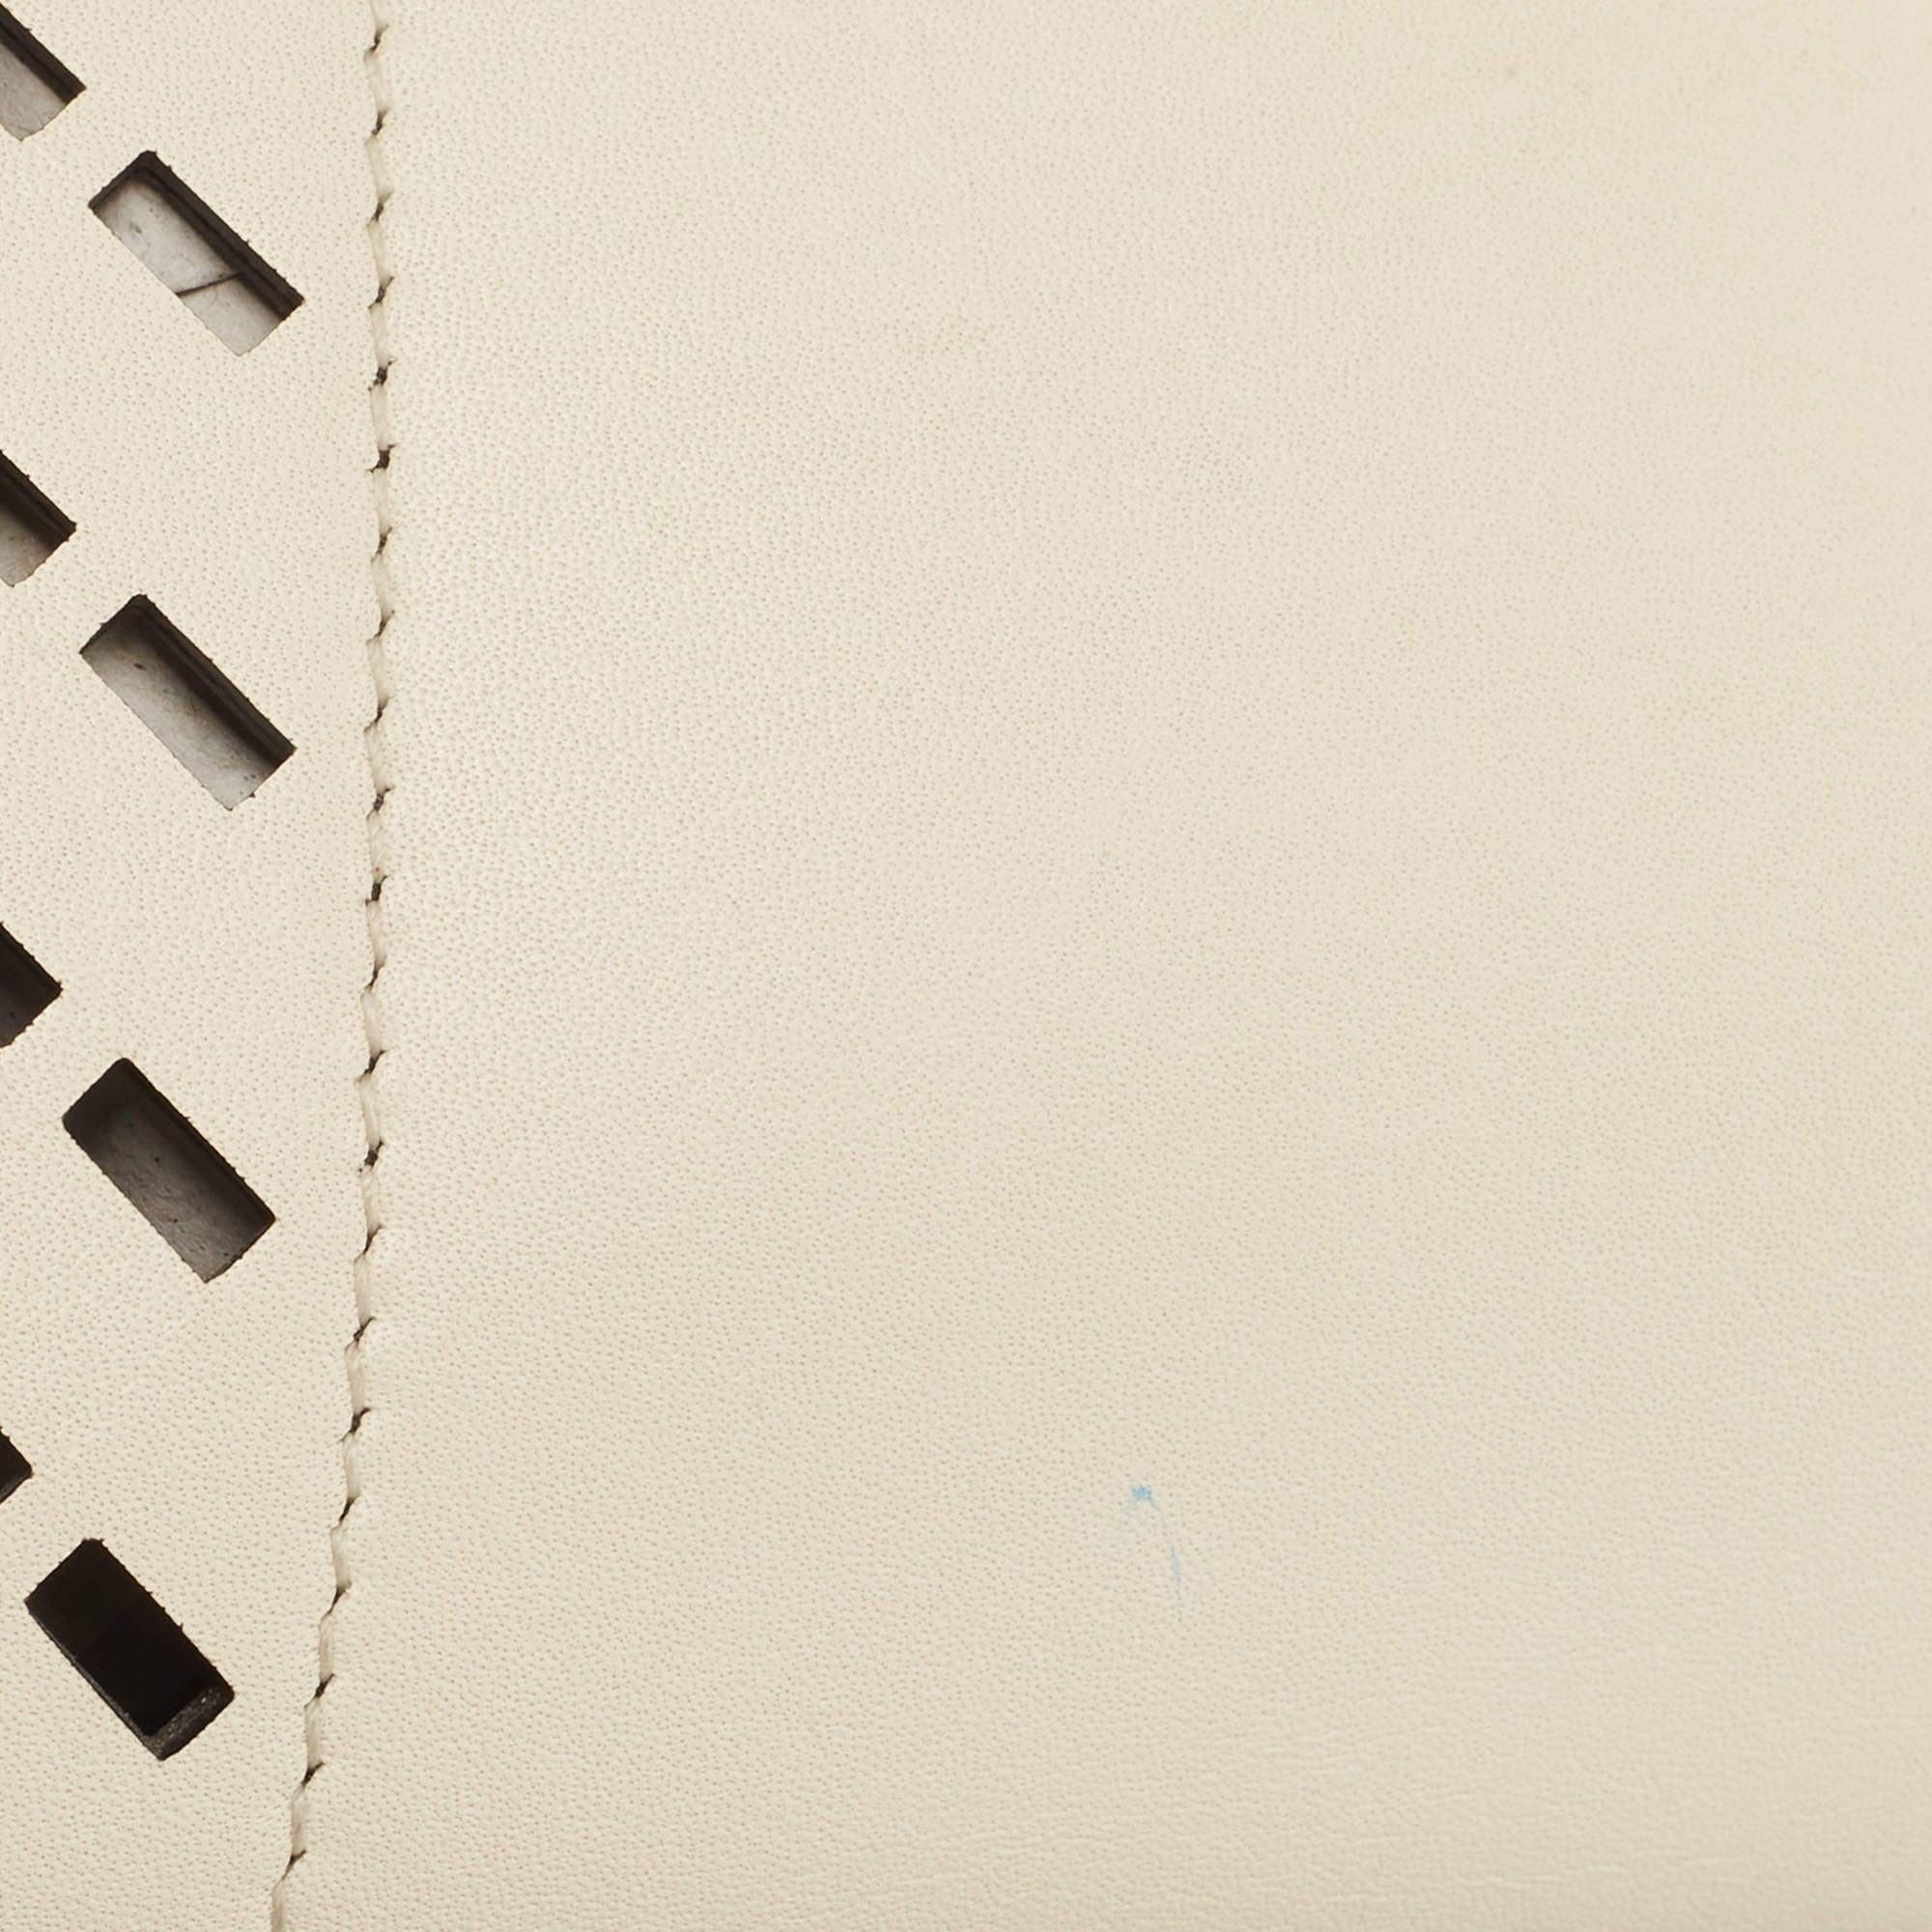 Salvatore Ferragamo White Laser Cut Leather Small Sofia Top Handle Bag 4